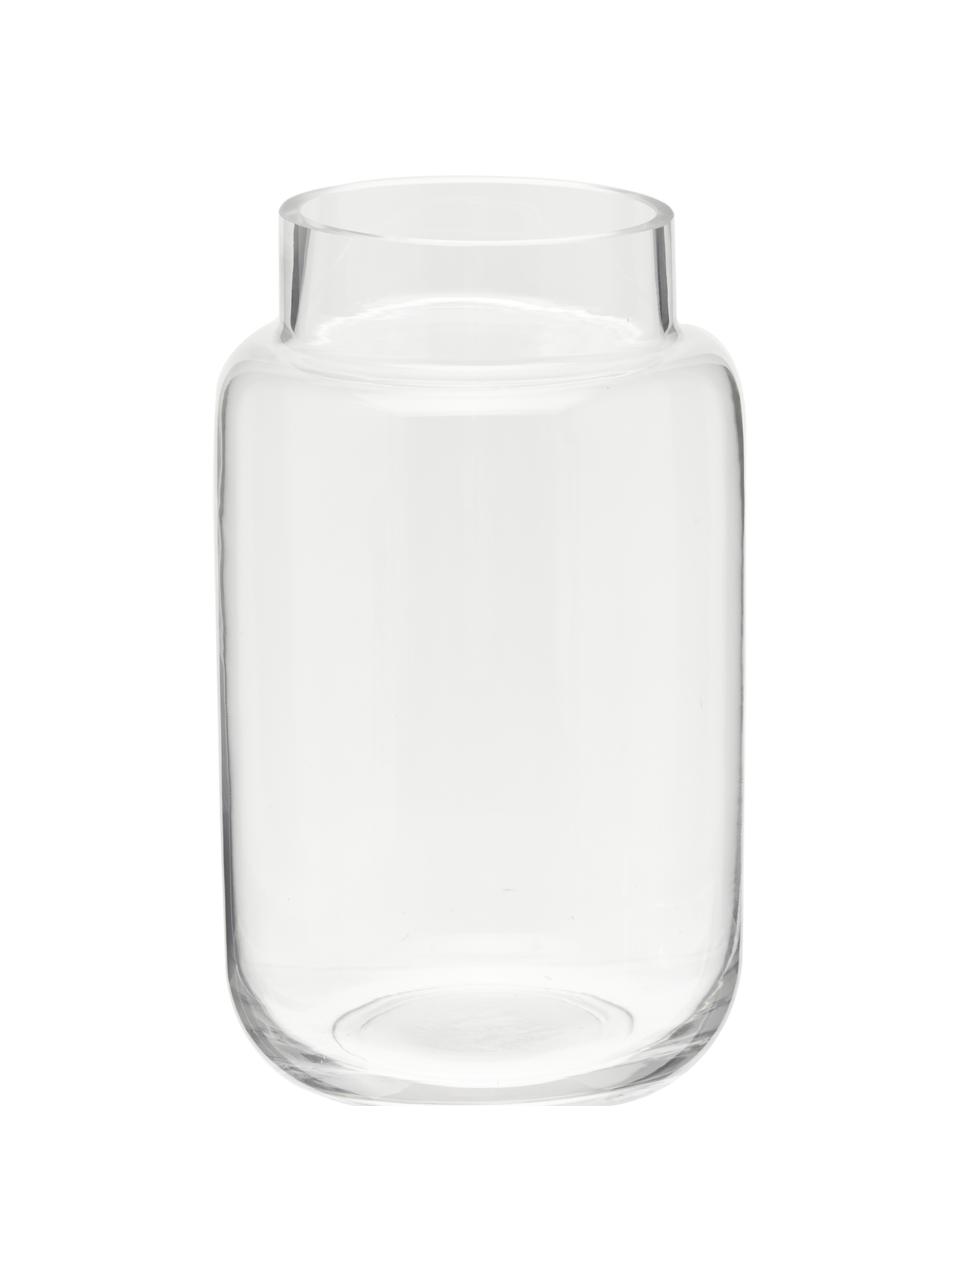 kwartaal Voornaamwoord Moderator Grote glazen vaas Lasse van glas | Westwing